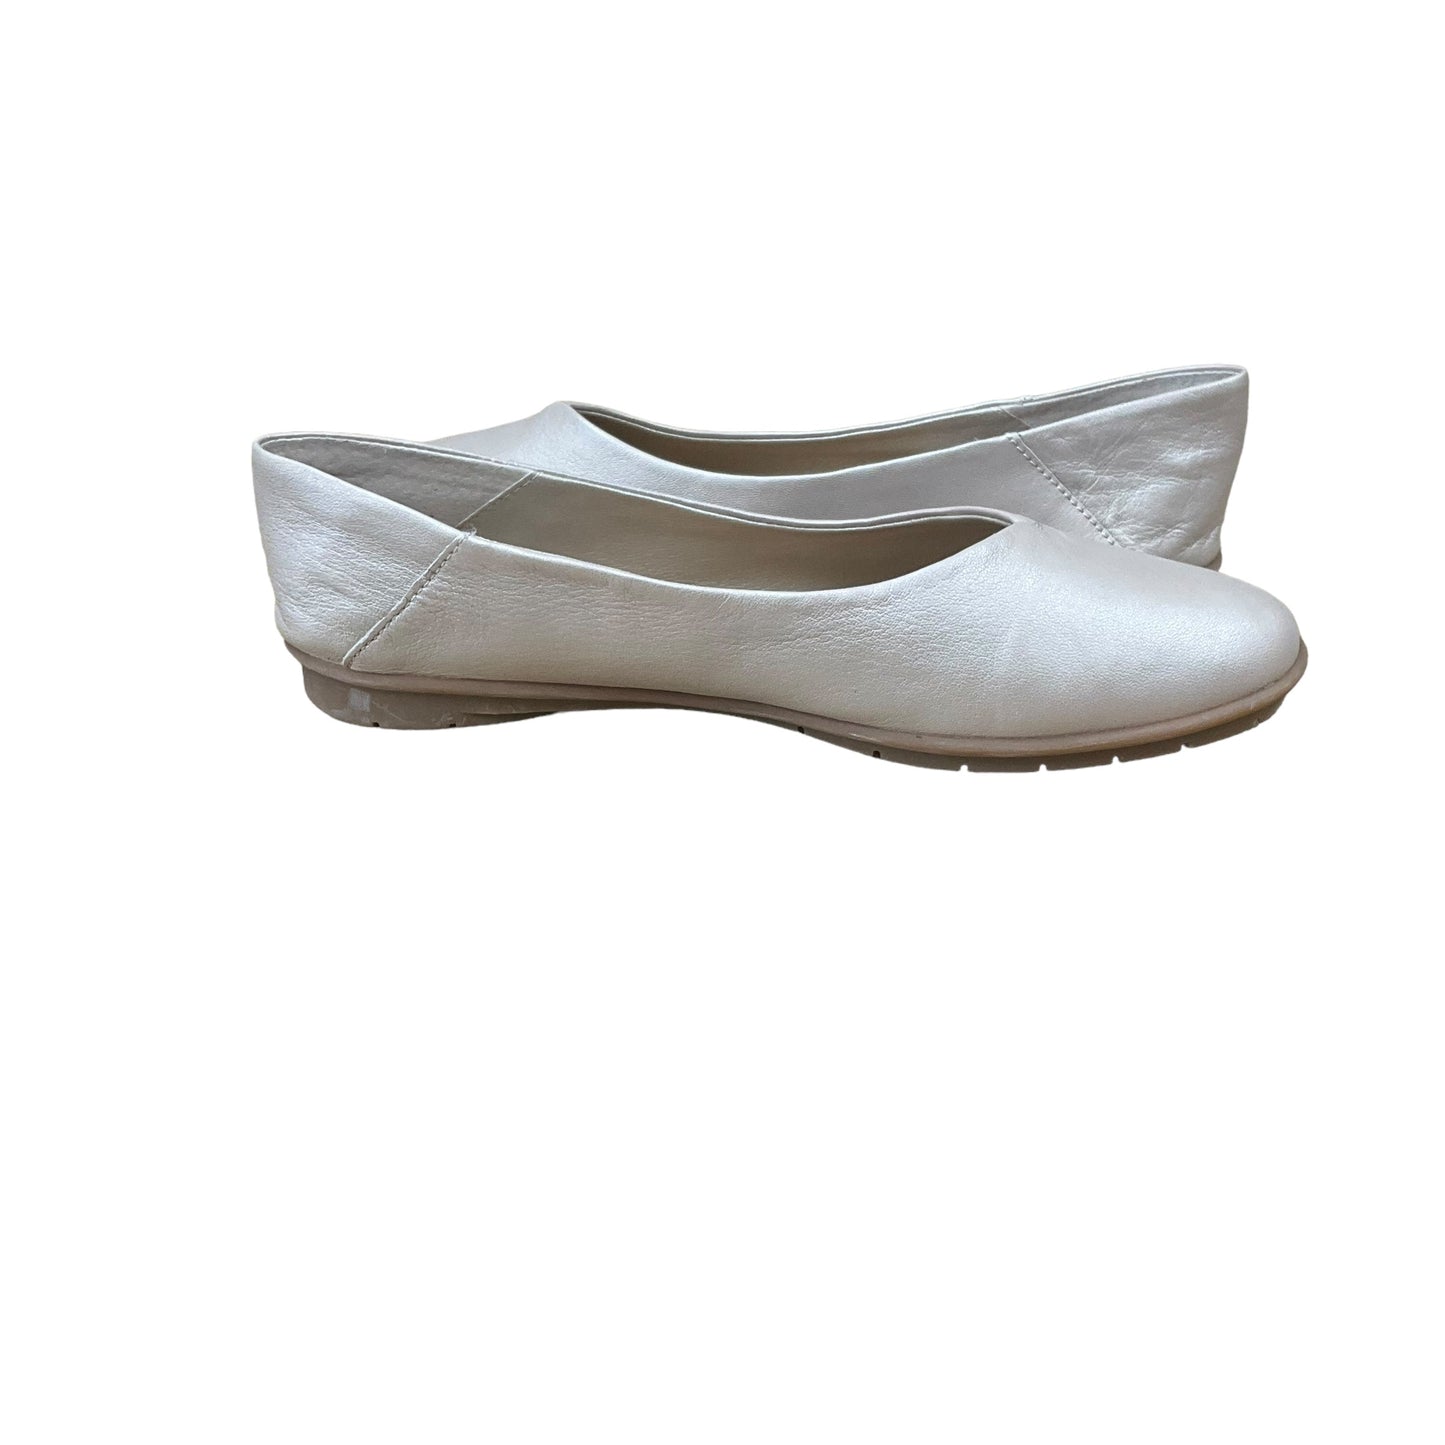 Beige Shoes Flats Cmc, Size 8